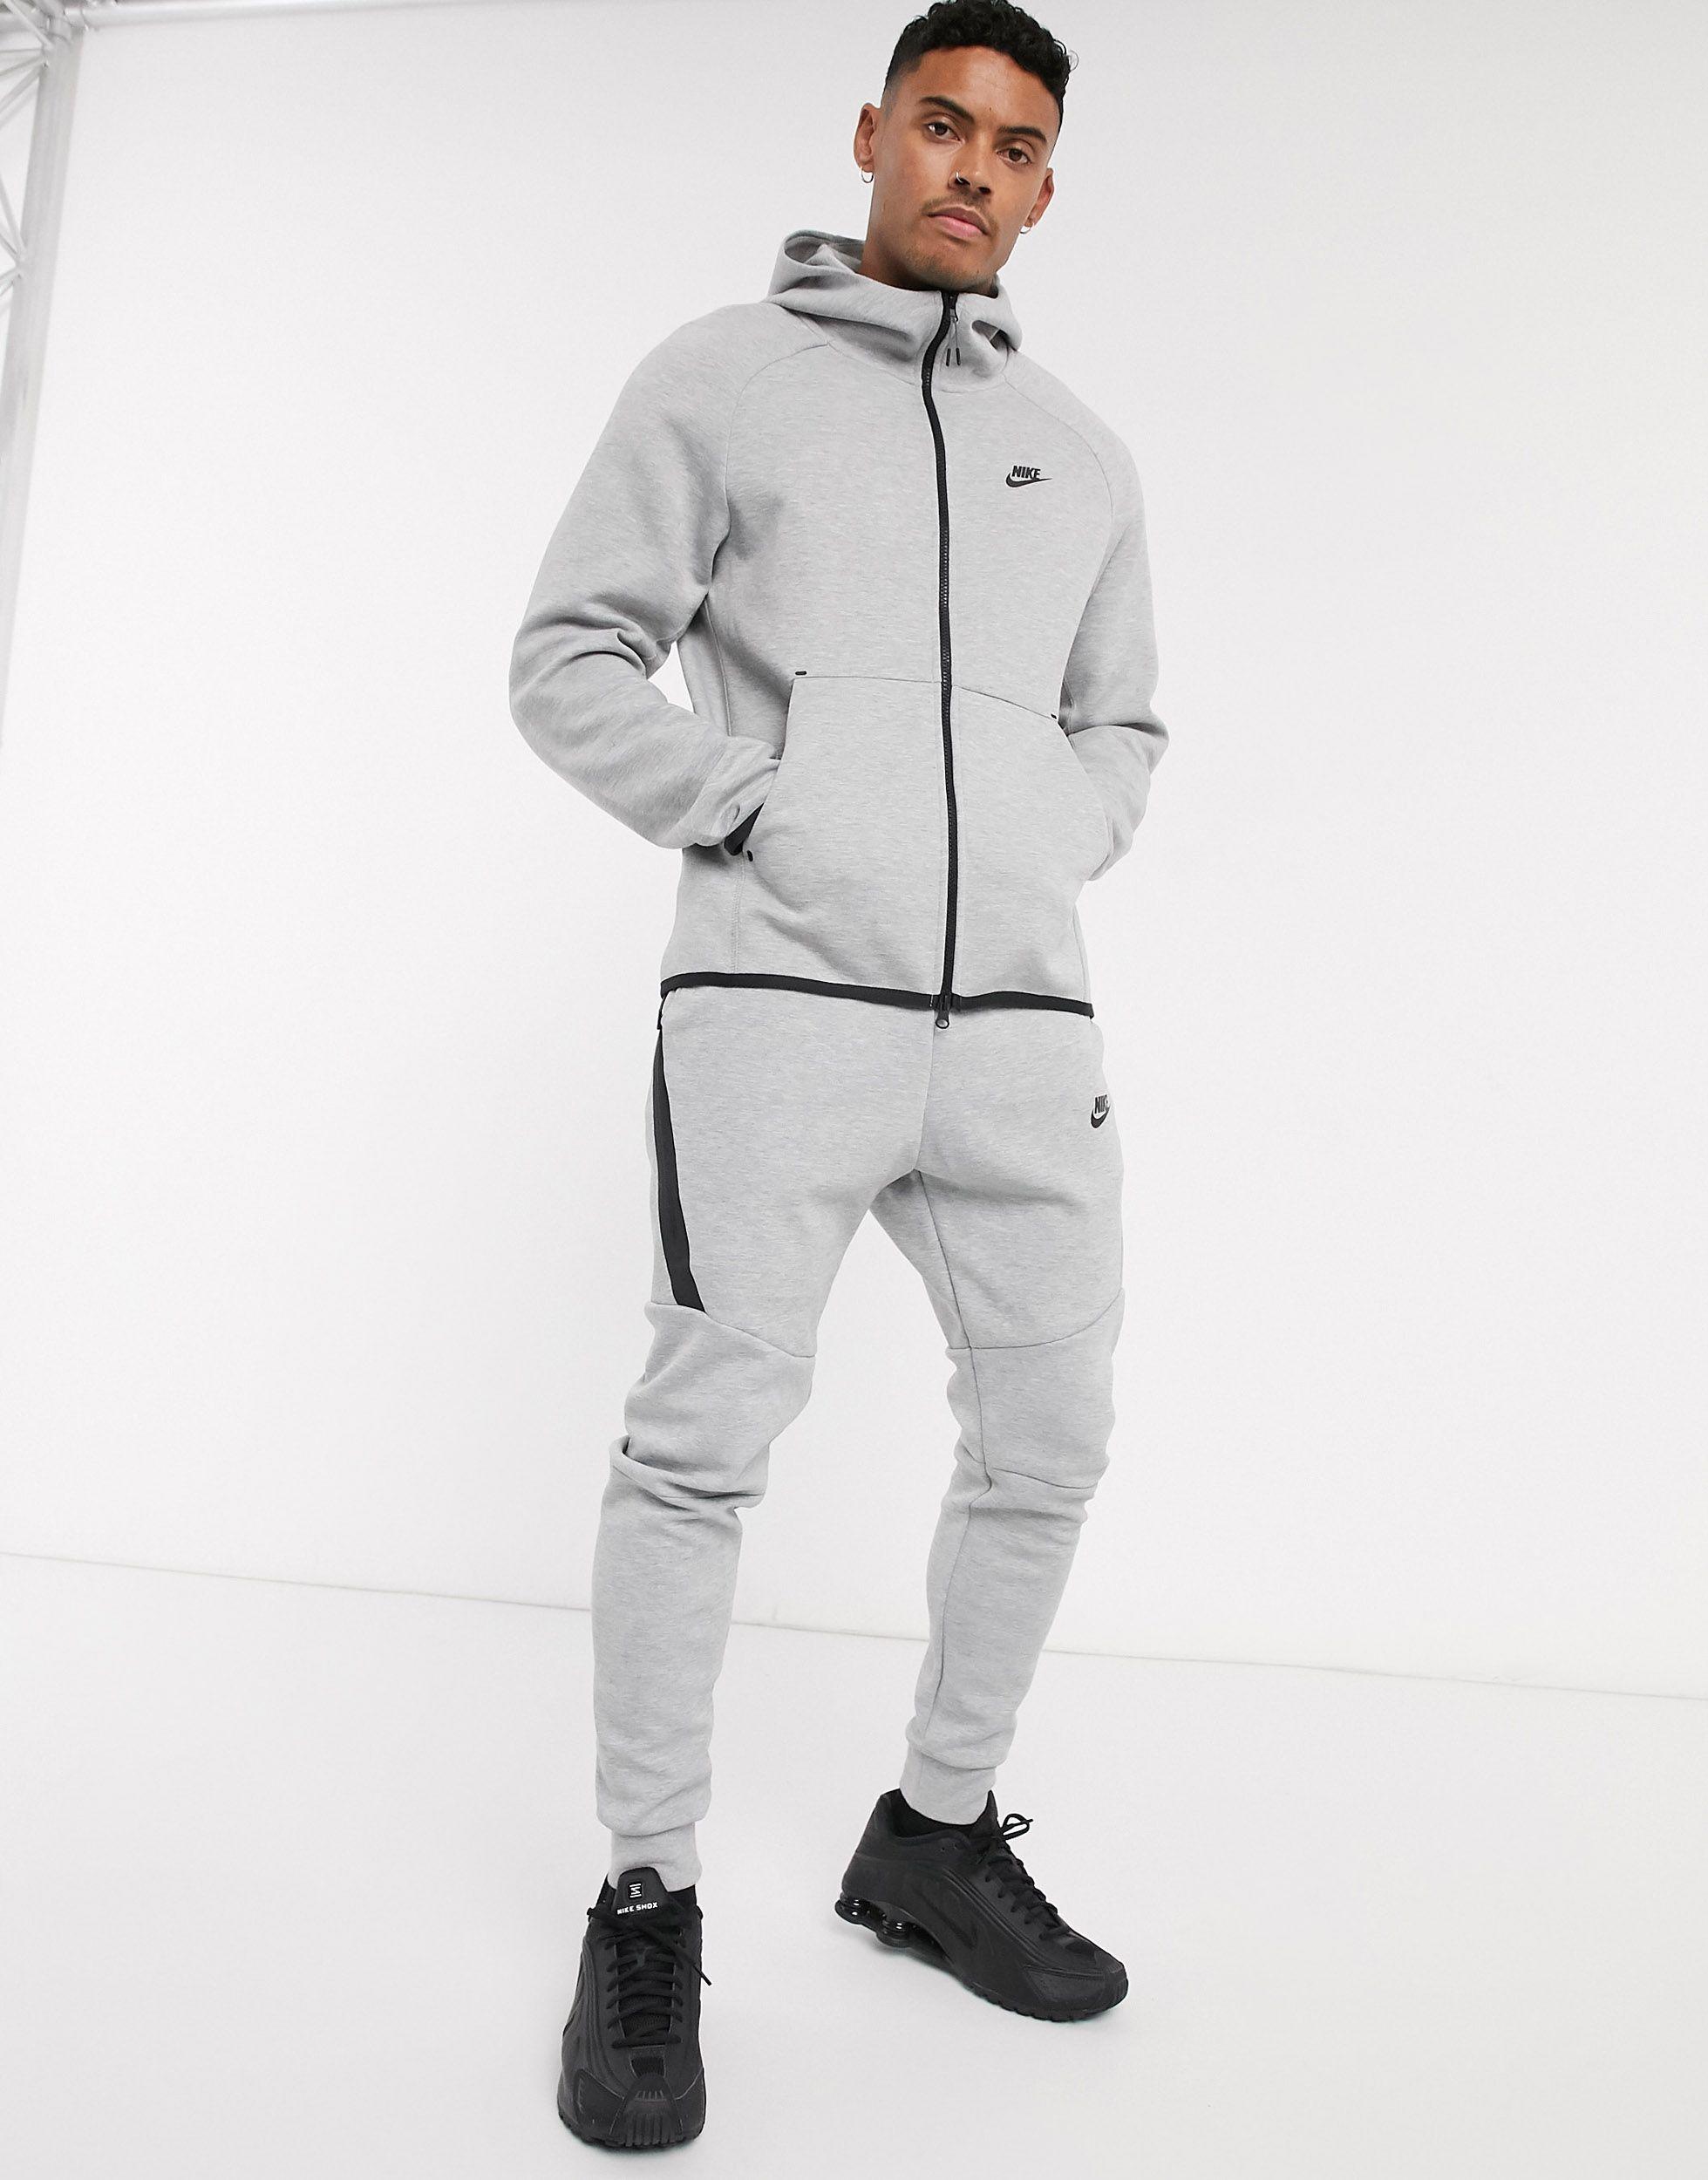 nike tech fleece zip through hoodie in grey